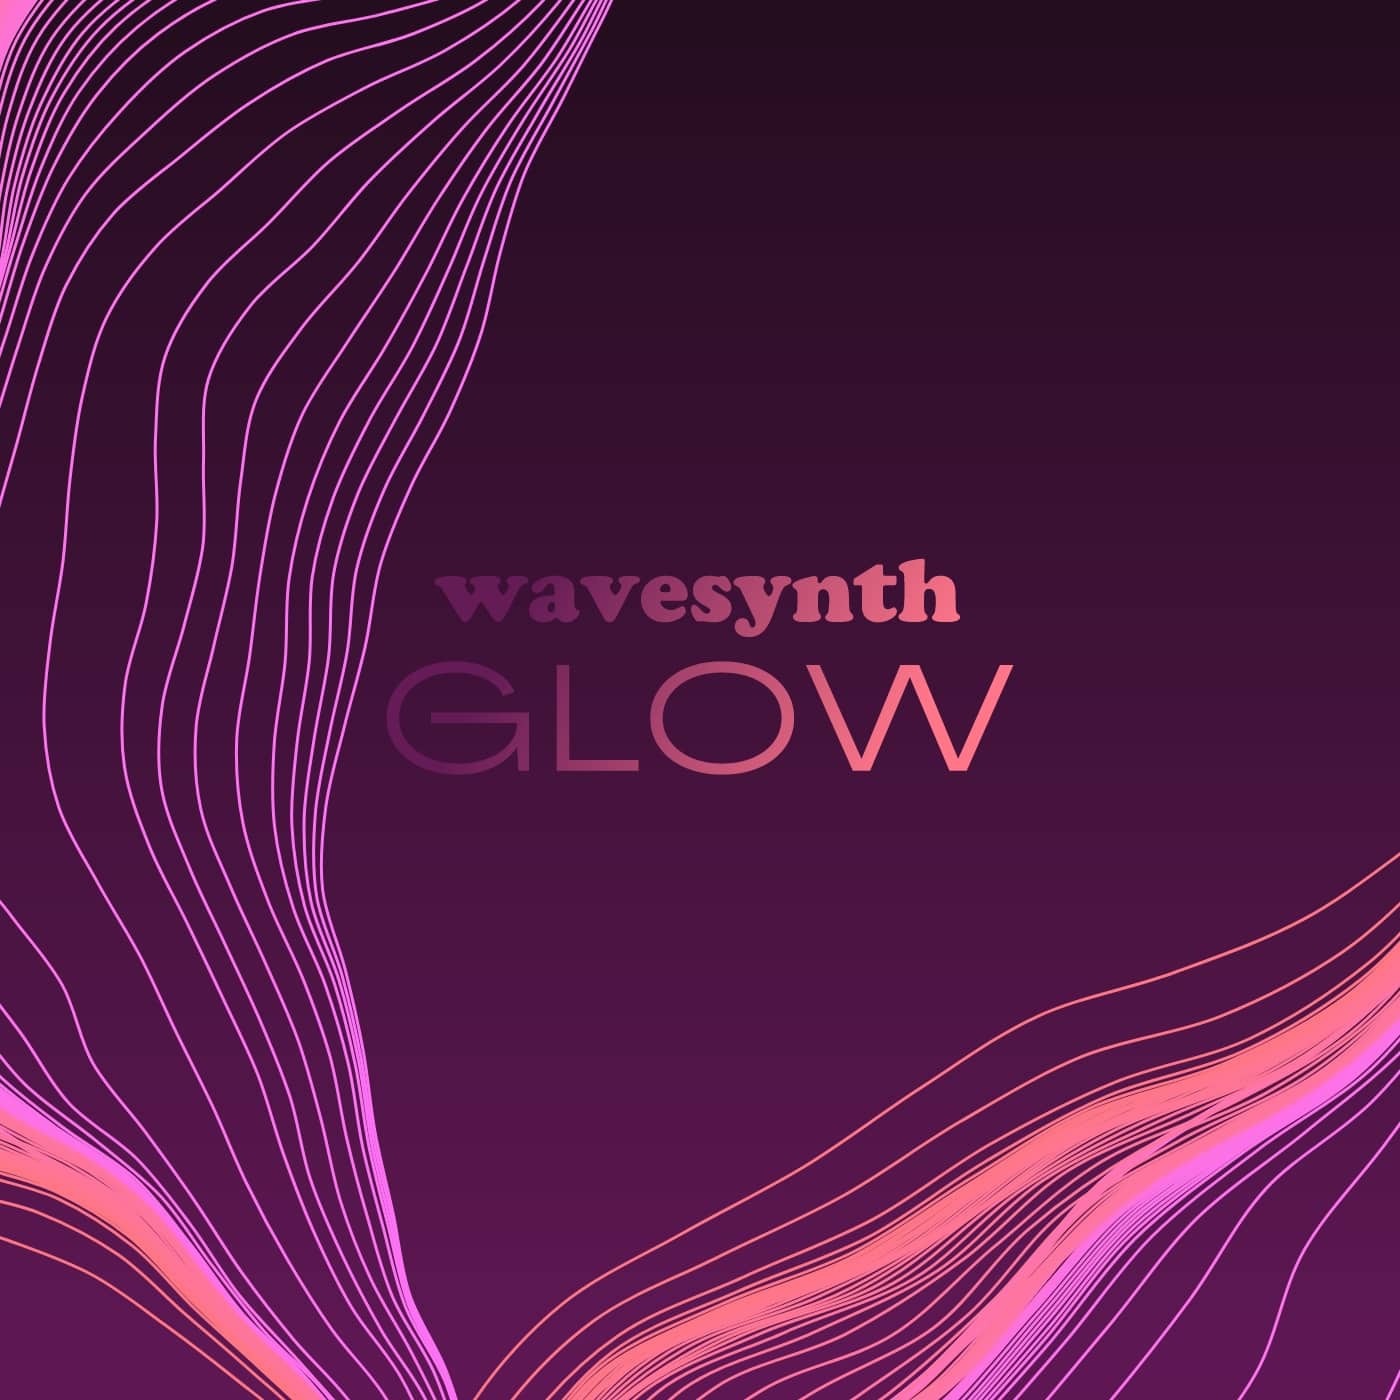 60% off “Wavesynth Glow” by Karanyi Sounds